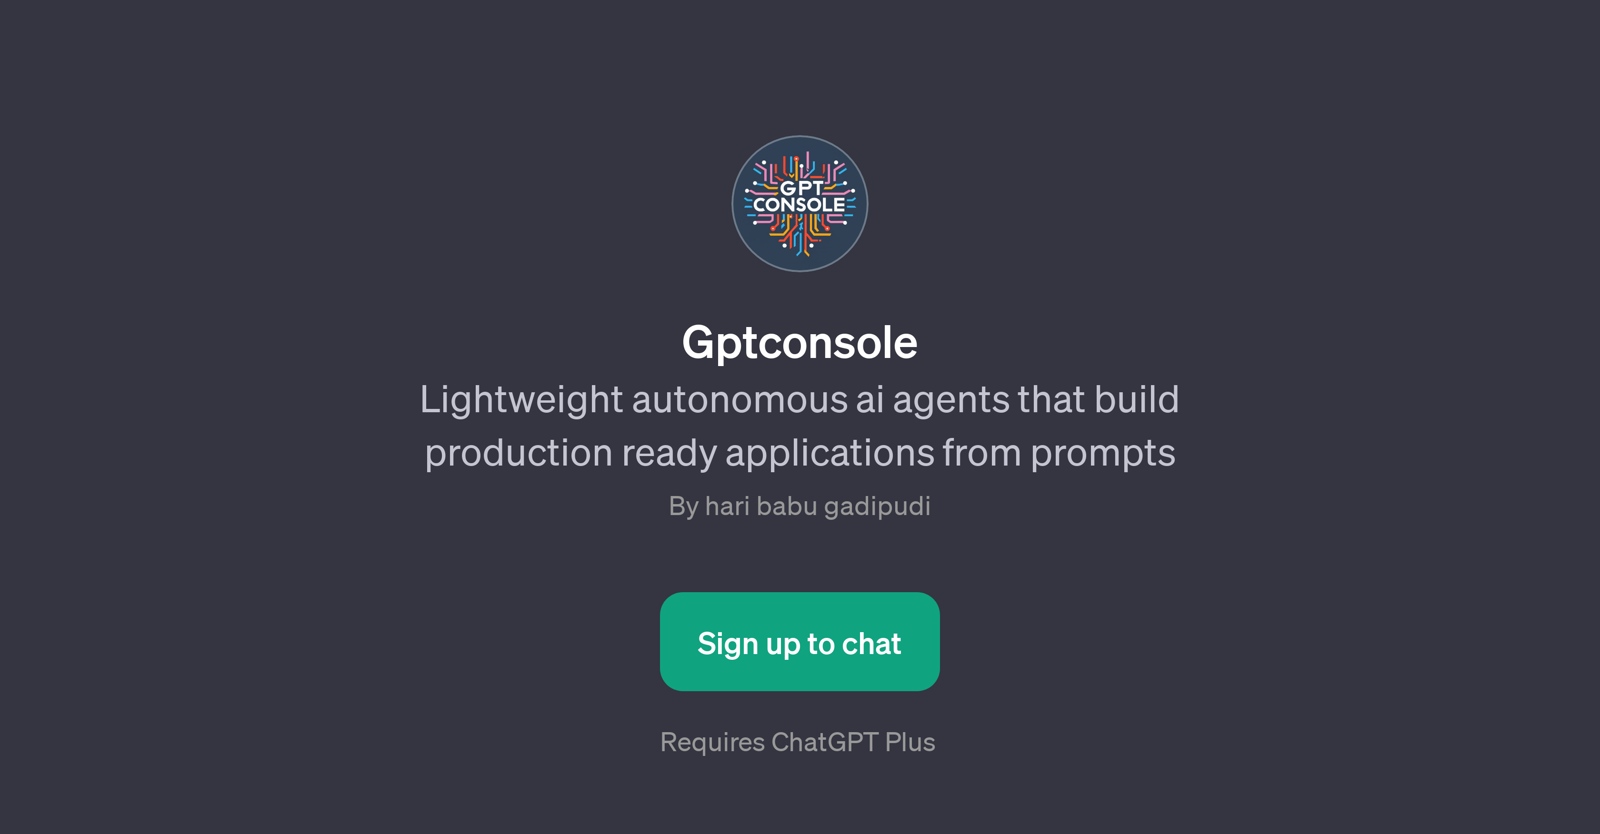 Gptconsole website